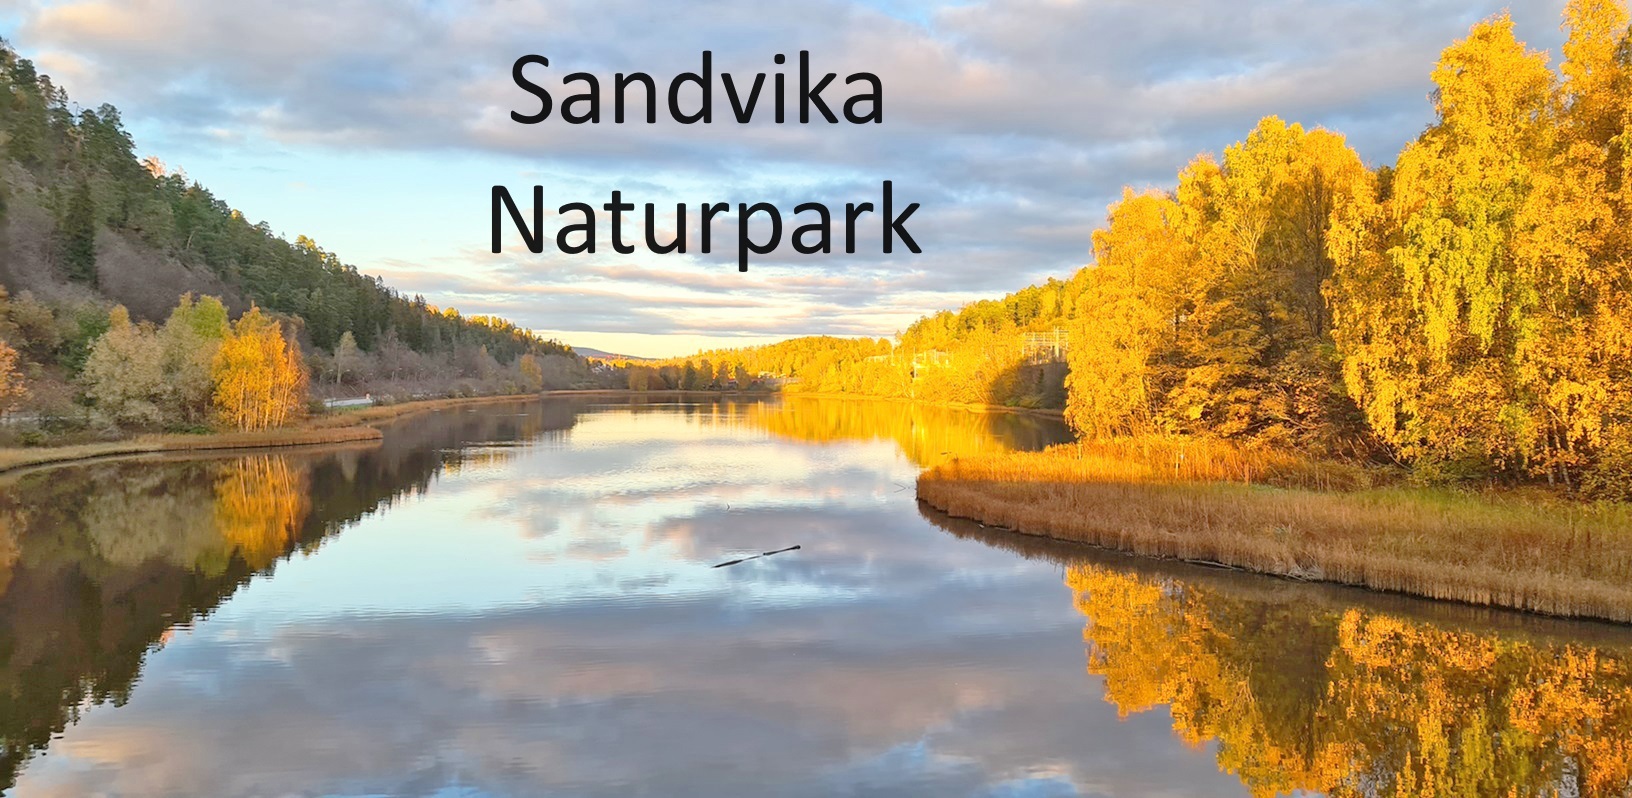 Sandvika Naturpark